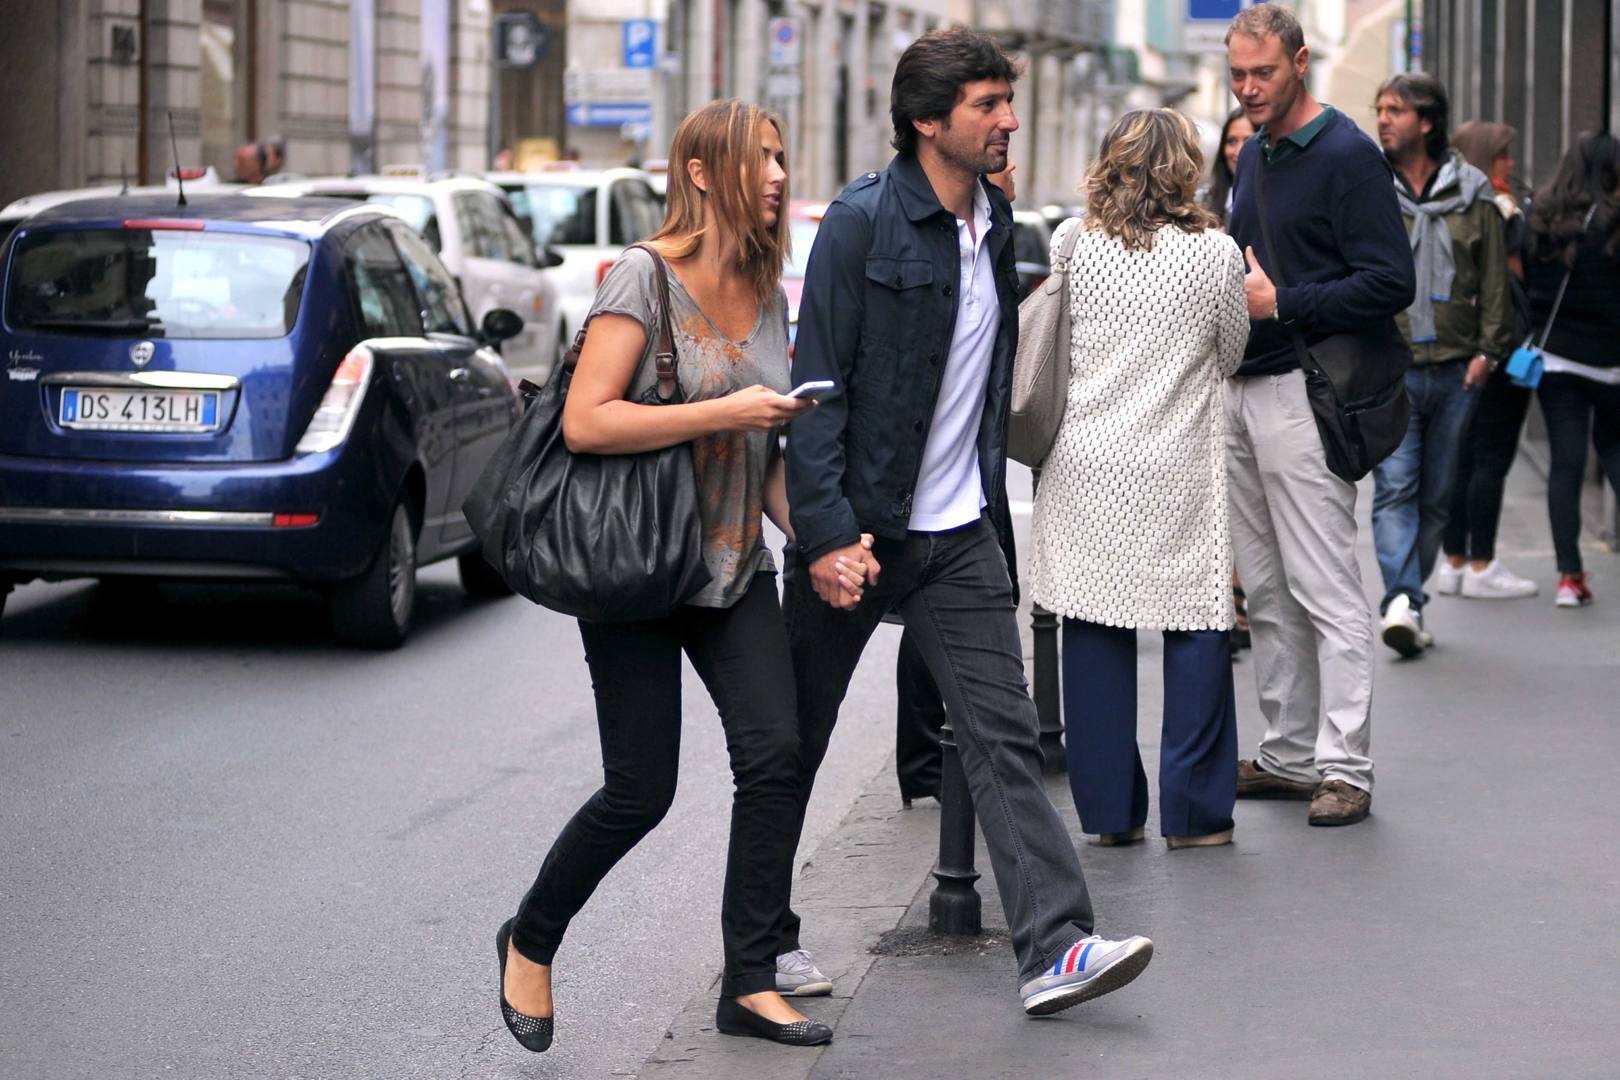 Leo e Anna, shopping a Milano - La Gazzetta dello Sport1620 x 1080